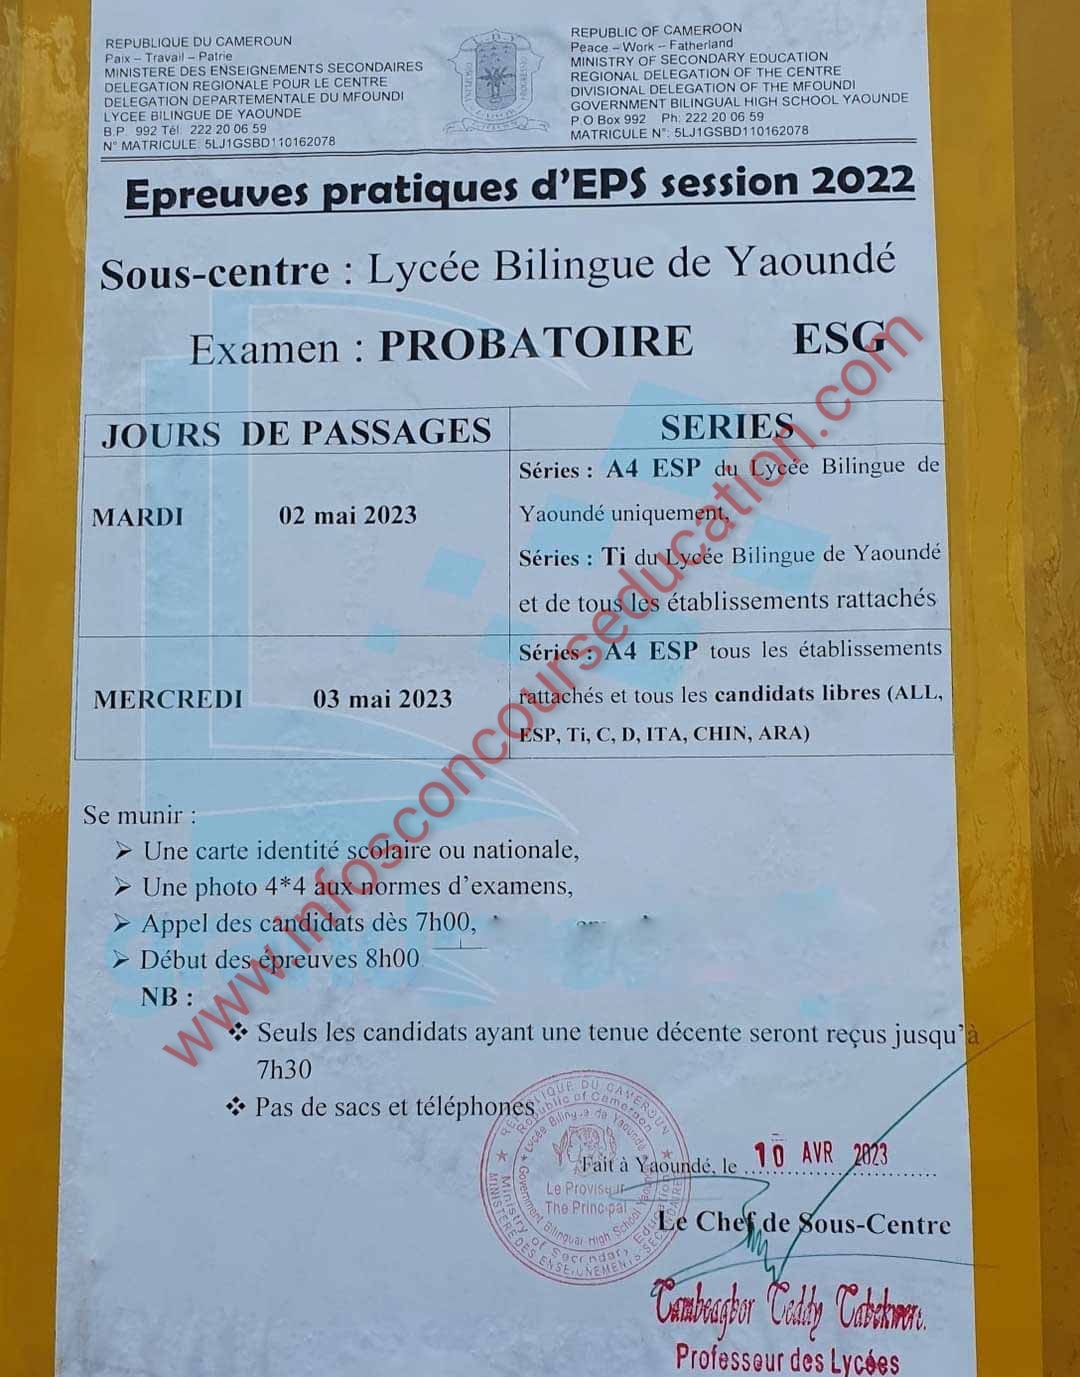 Calendrier des Epreuves pratiques d'EPS aux examens 2023